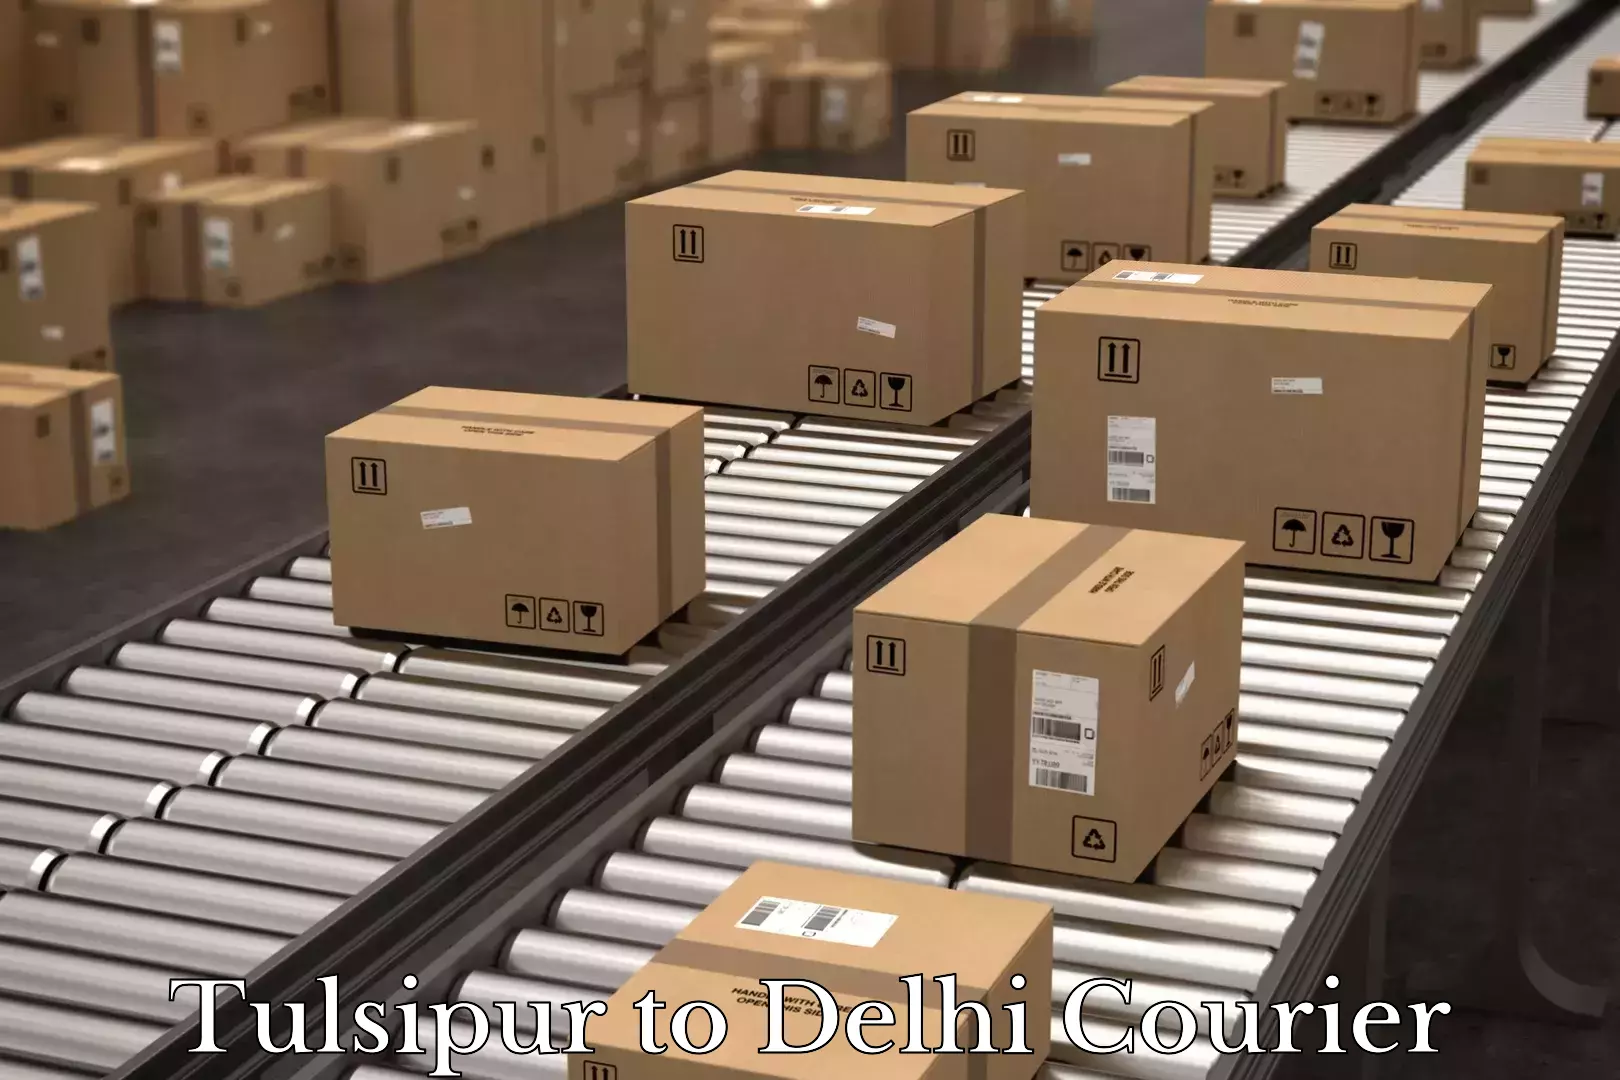 Luggage delivery estimate Tulsipur to Jamia Millia Islamia New Delhi